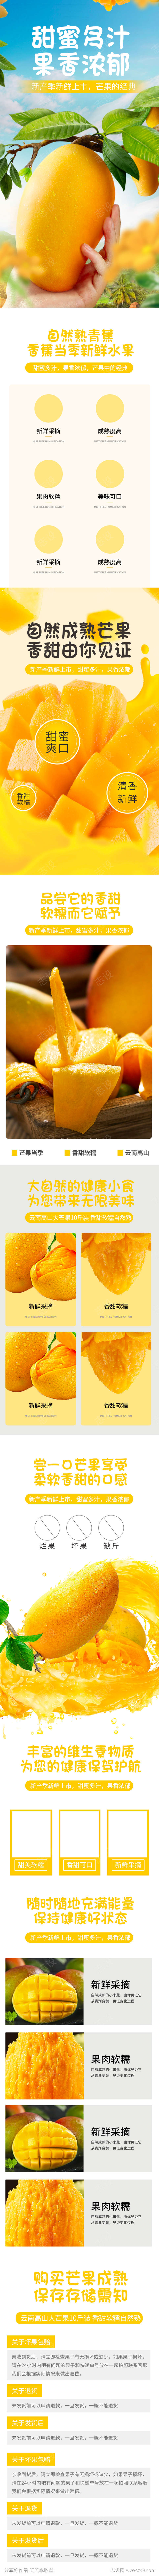 芒果水果蔬菜生鲜详情页